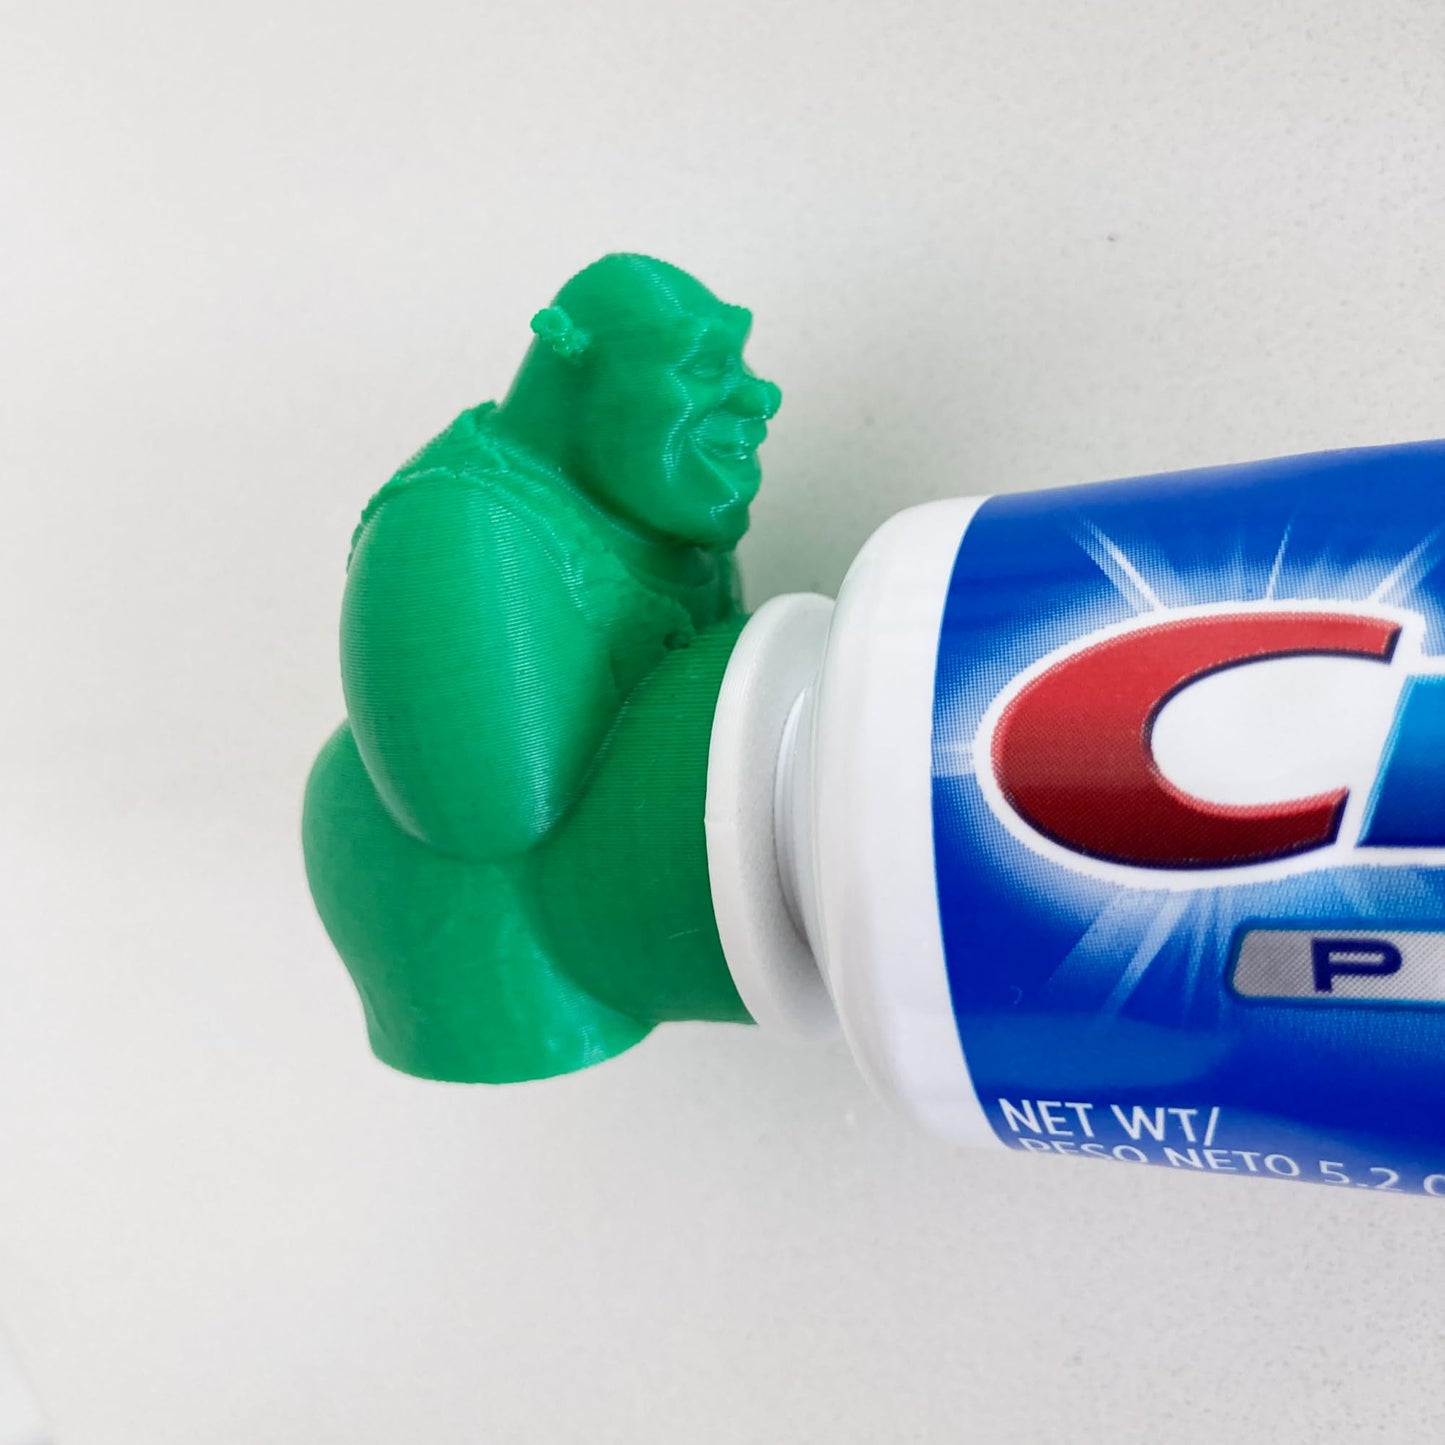 PRODUCTO 664 TUBECAPZ Divertido adorno para pasta de dientes Shrek, incluye 2 adaptadores para tubos Crest y Colgate (Shrek)